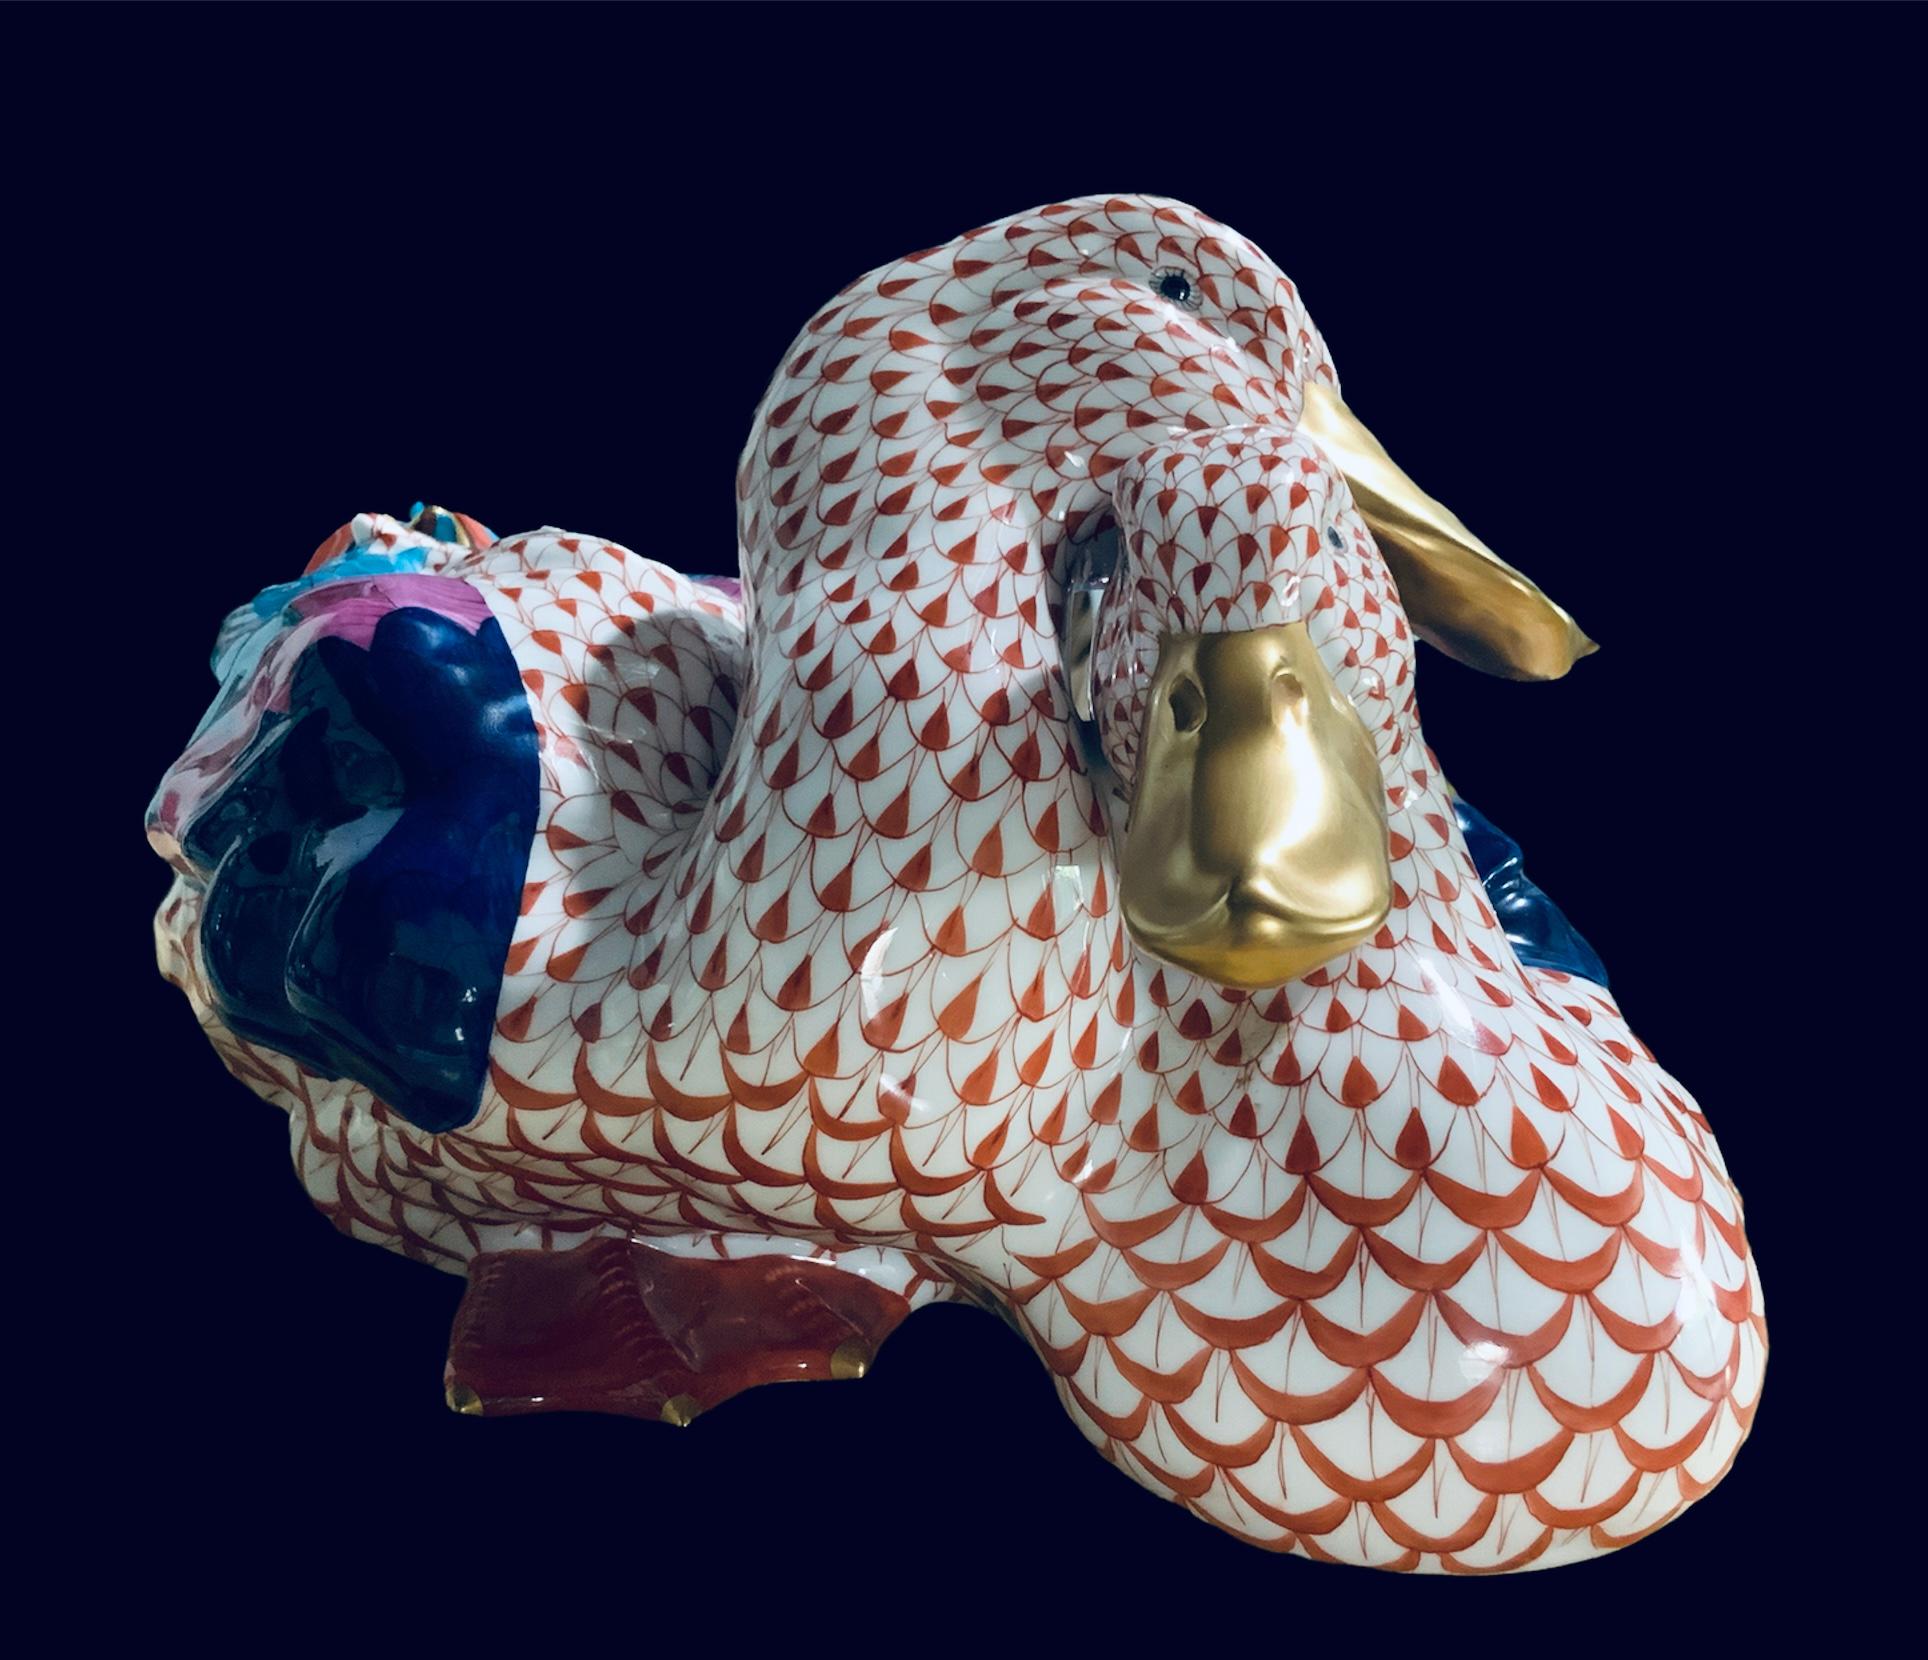 Il s'agit d'une paire de canards de grande taille en porcelaine Herend, peints à la main. Leur fond est blanc avec un motif de filet en écailles de poisson orange. Leurs ailes sont peintes à la main en bleu marine, rose et turquoise. Les plumes de